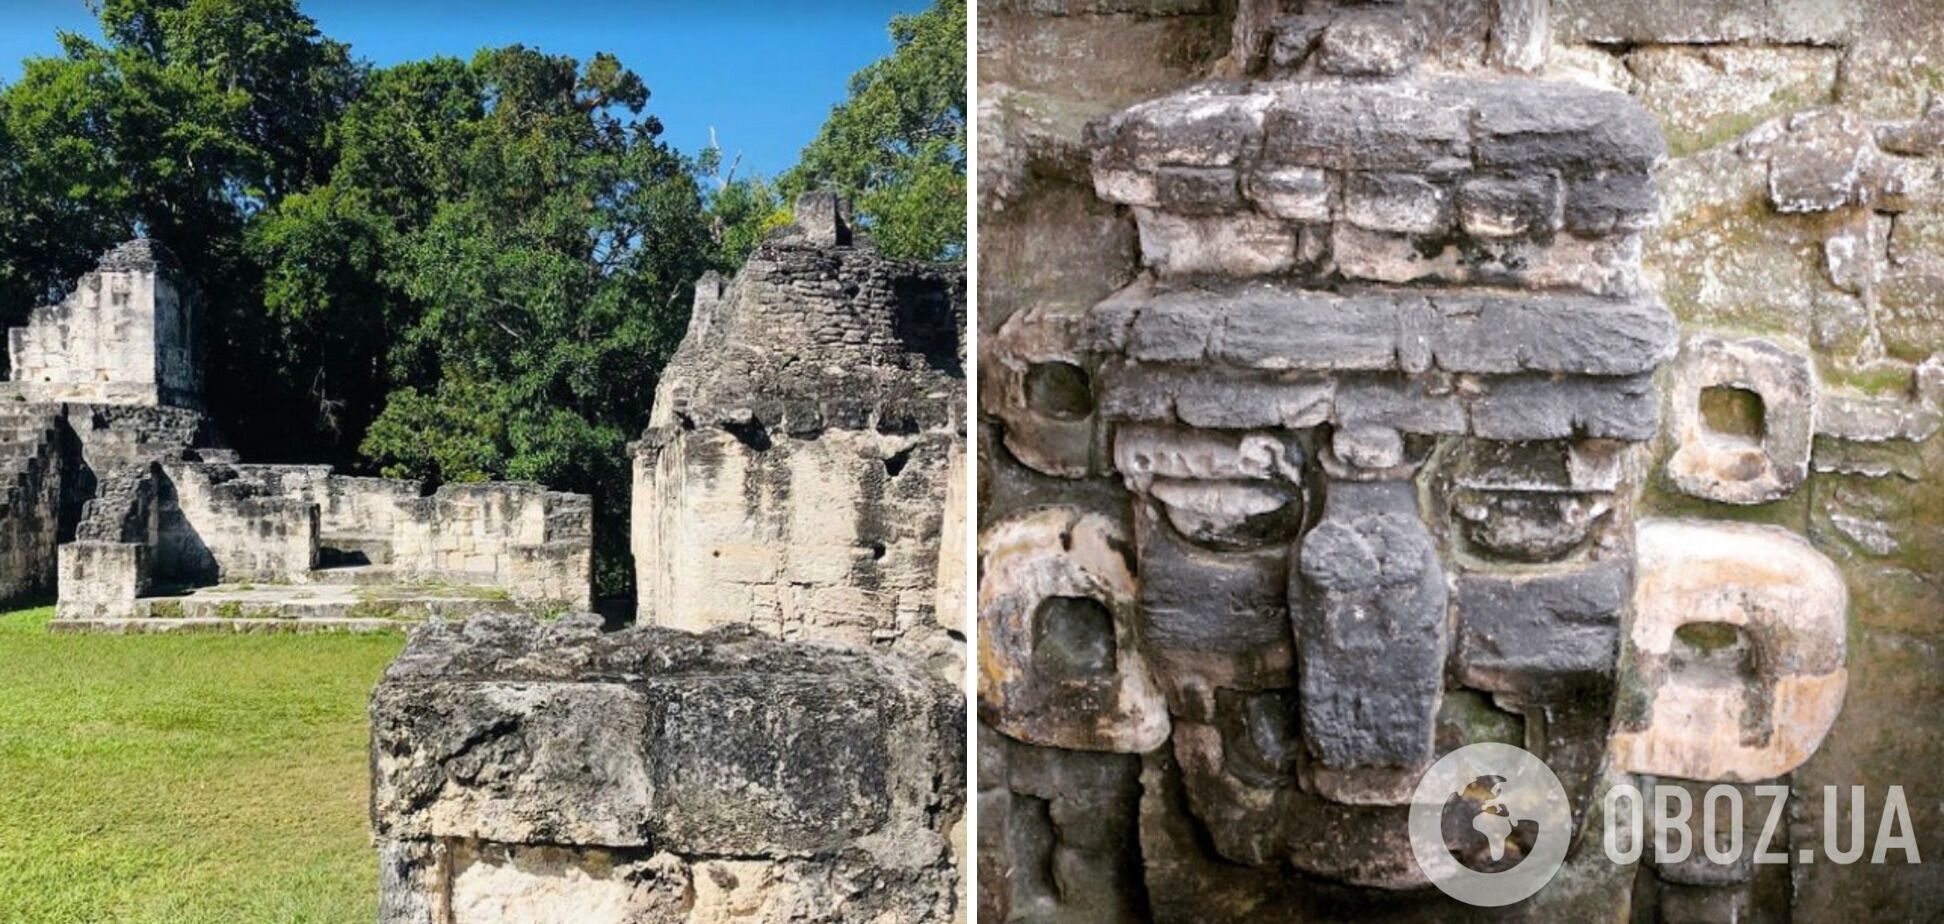 Тикаль – самый большой из разрушенных доколумбовских городов майя